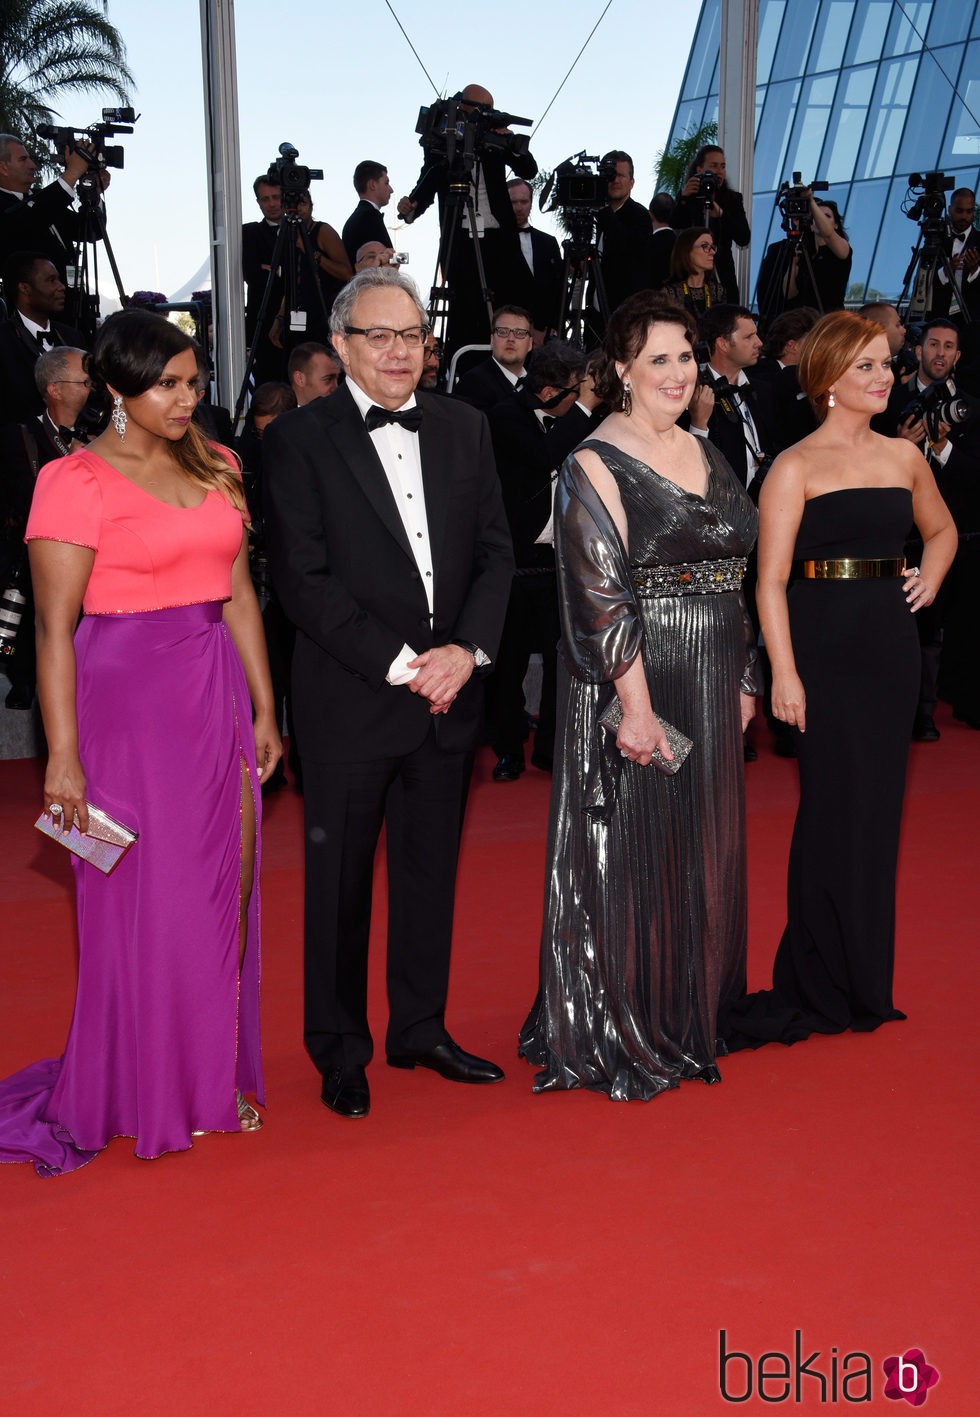 Mindy Kaling, Lewis Black, Phyllis Smith y Amy Poehler en el estreno de 'Inside Out' en Cannes 2015